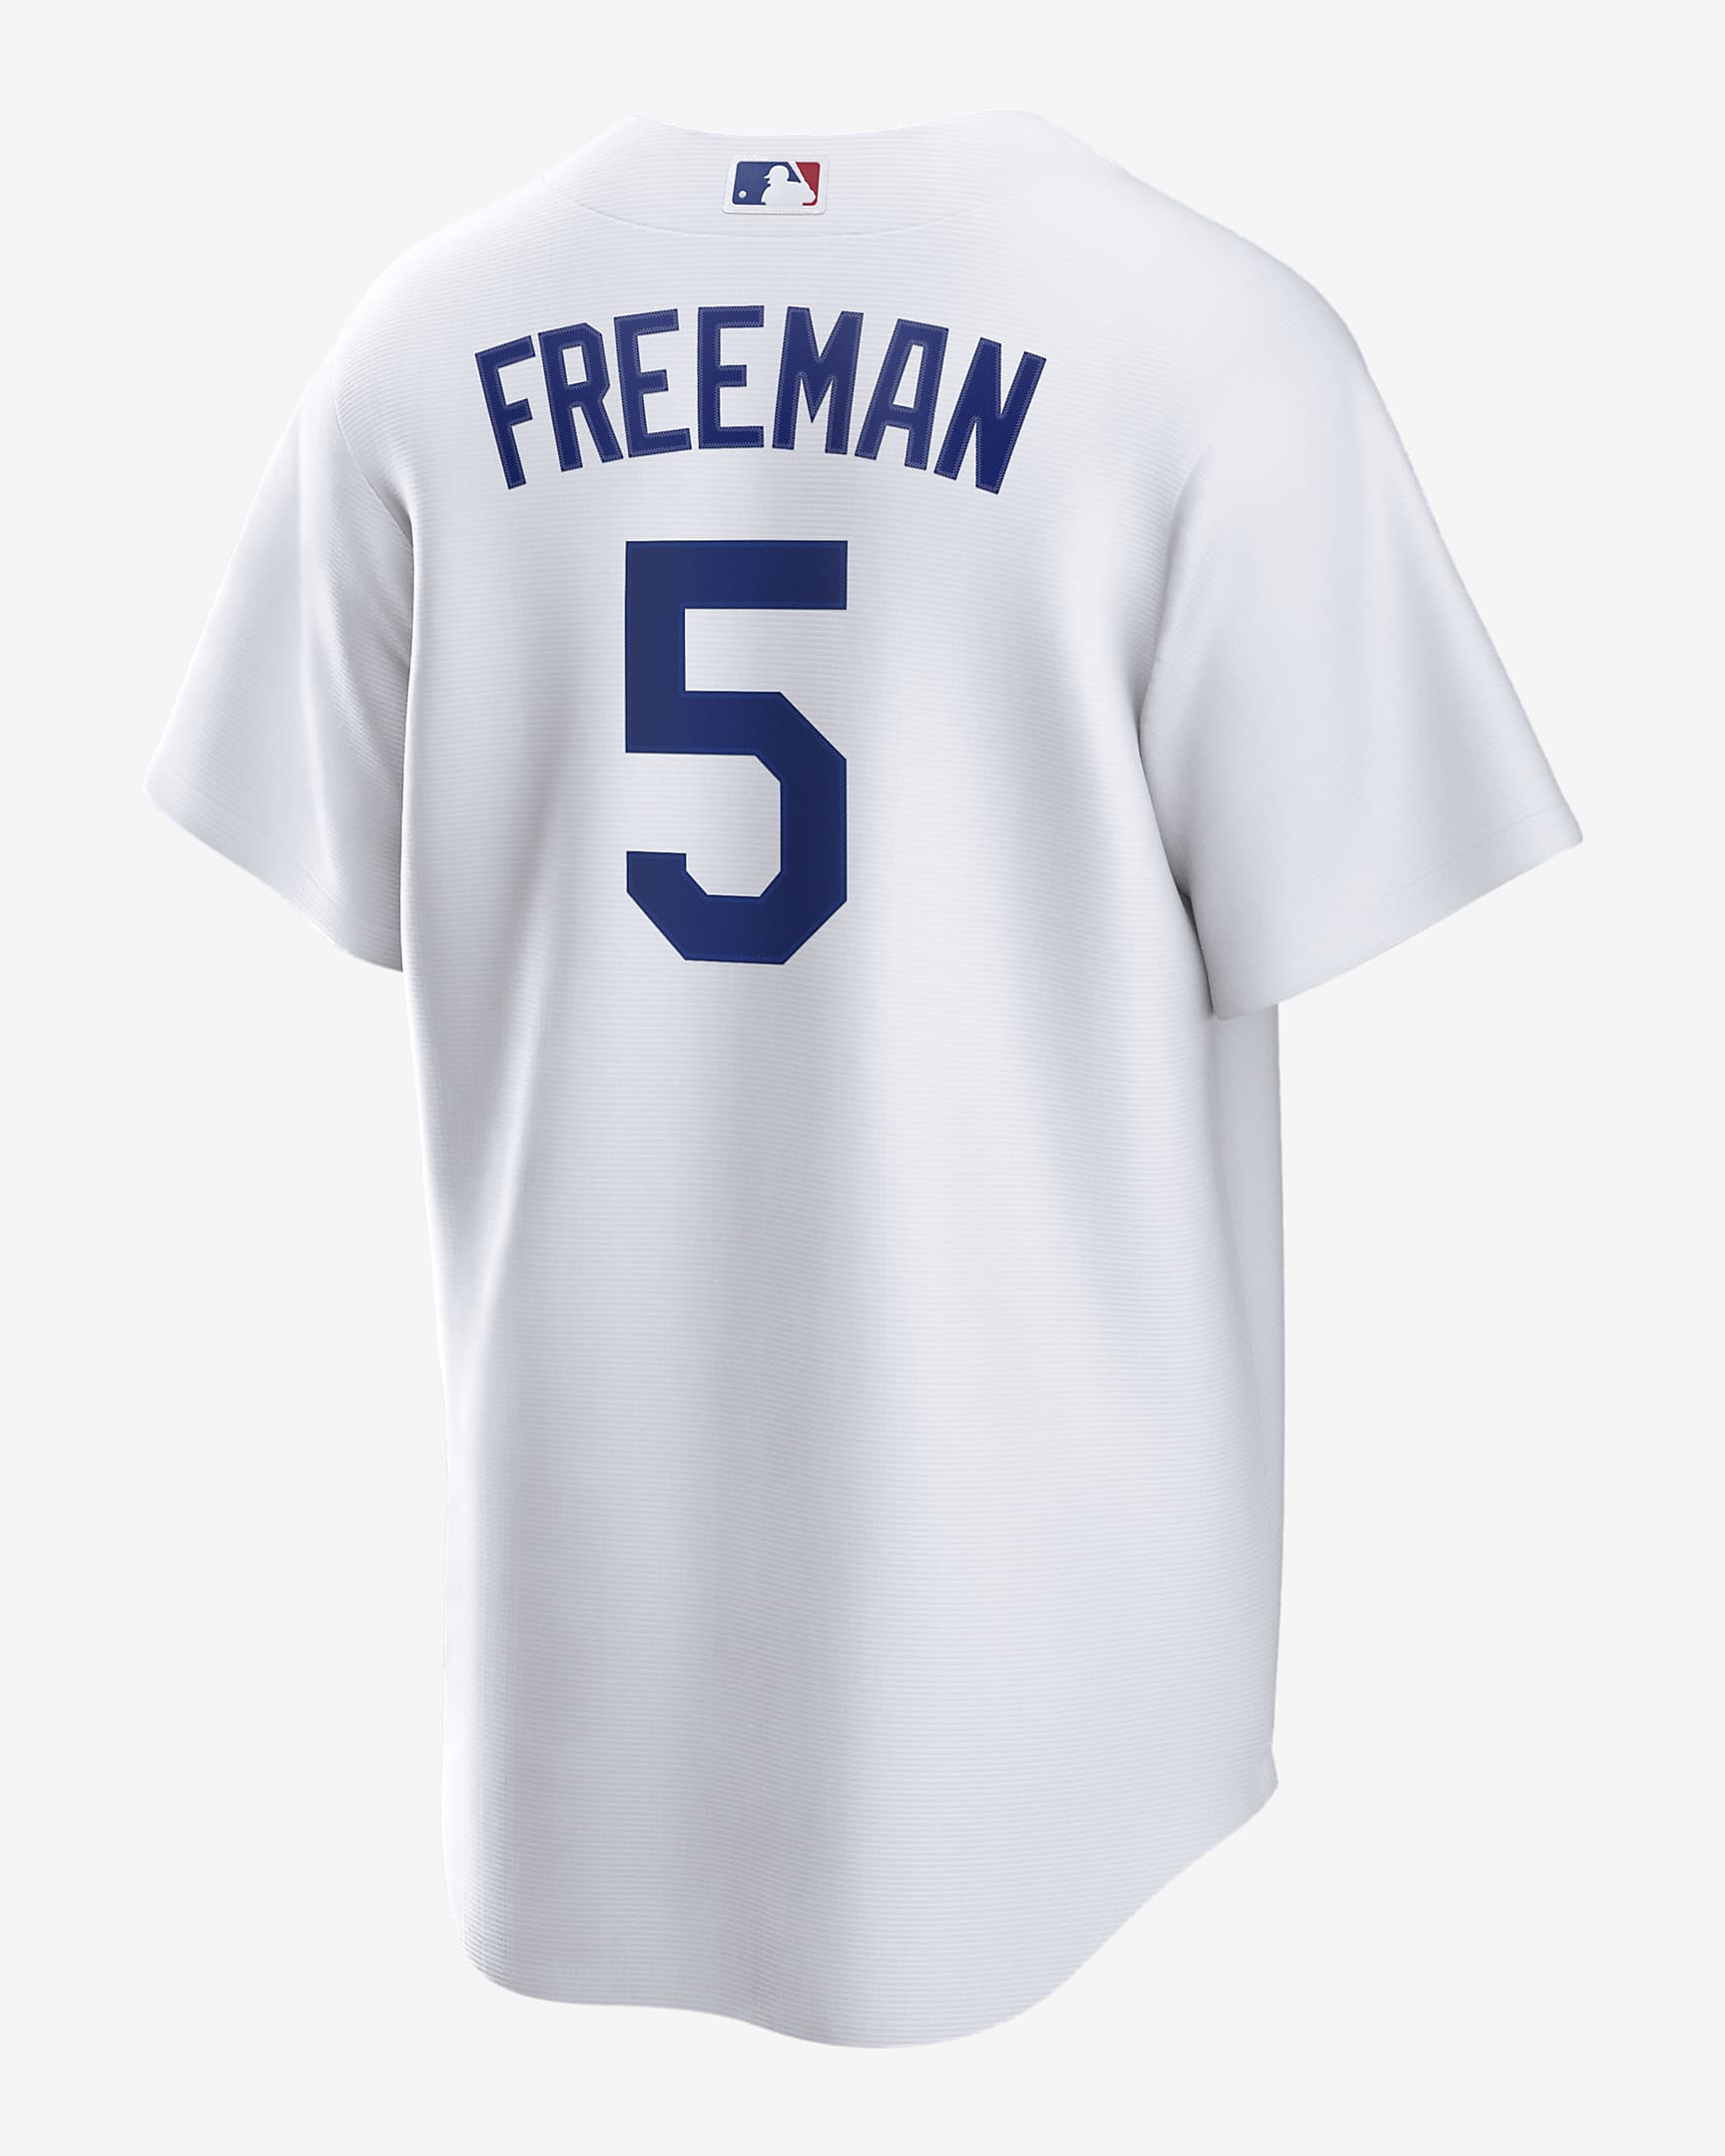 Jersey de béisbol Replica para hombre MLB Los Angeles Dodgers (Freddie Freeman) - Blanco